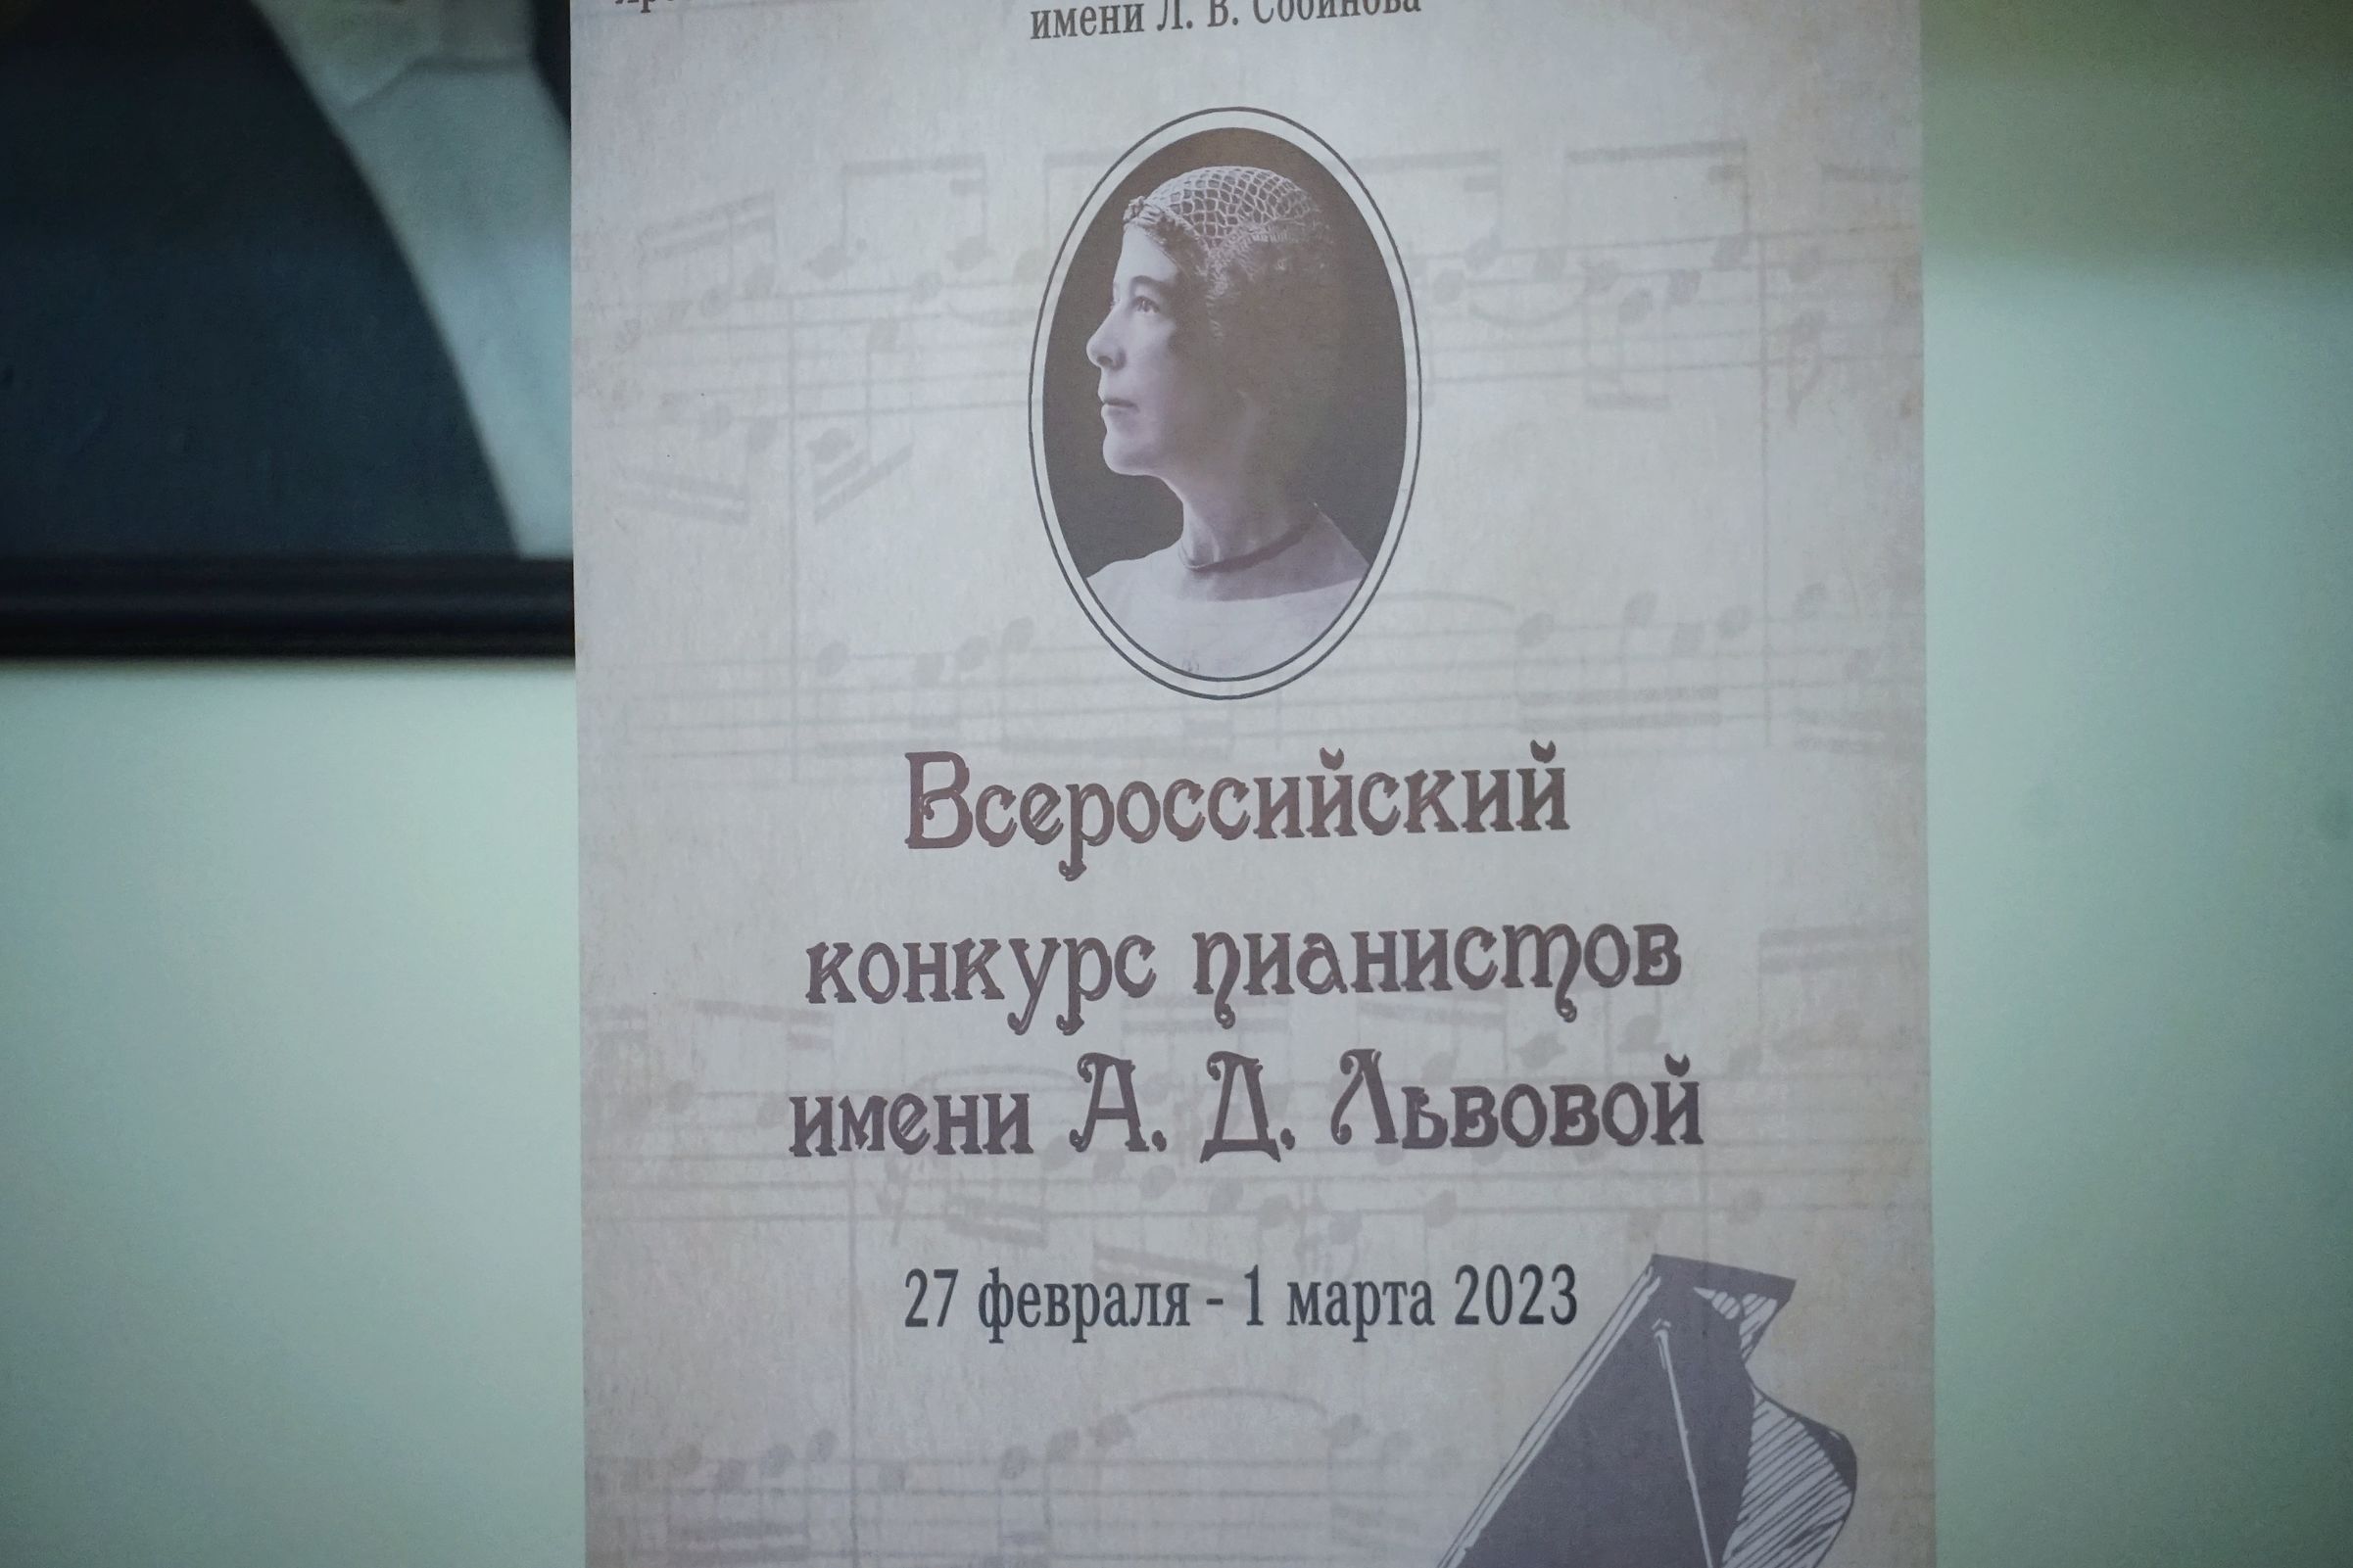 Всероссийский конкурс пианистов проходит в Ярославском музыкальном училище имени Л.В. Собинова